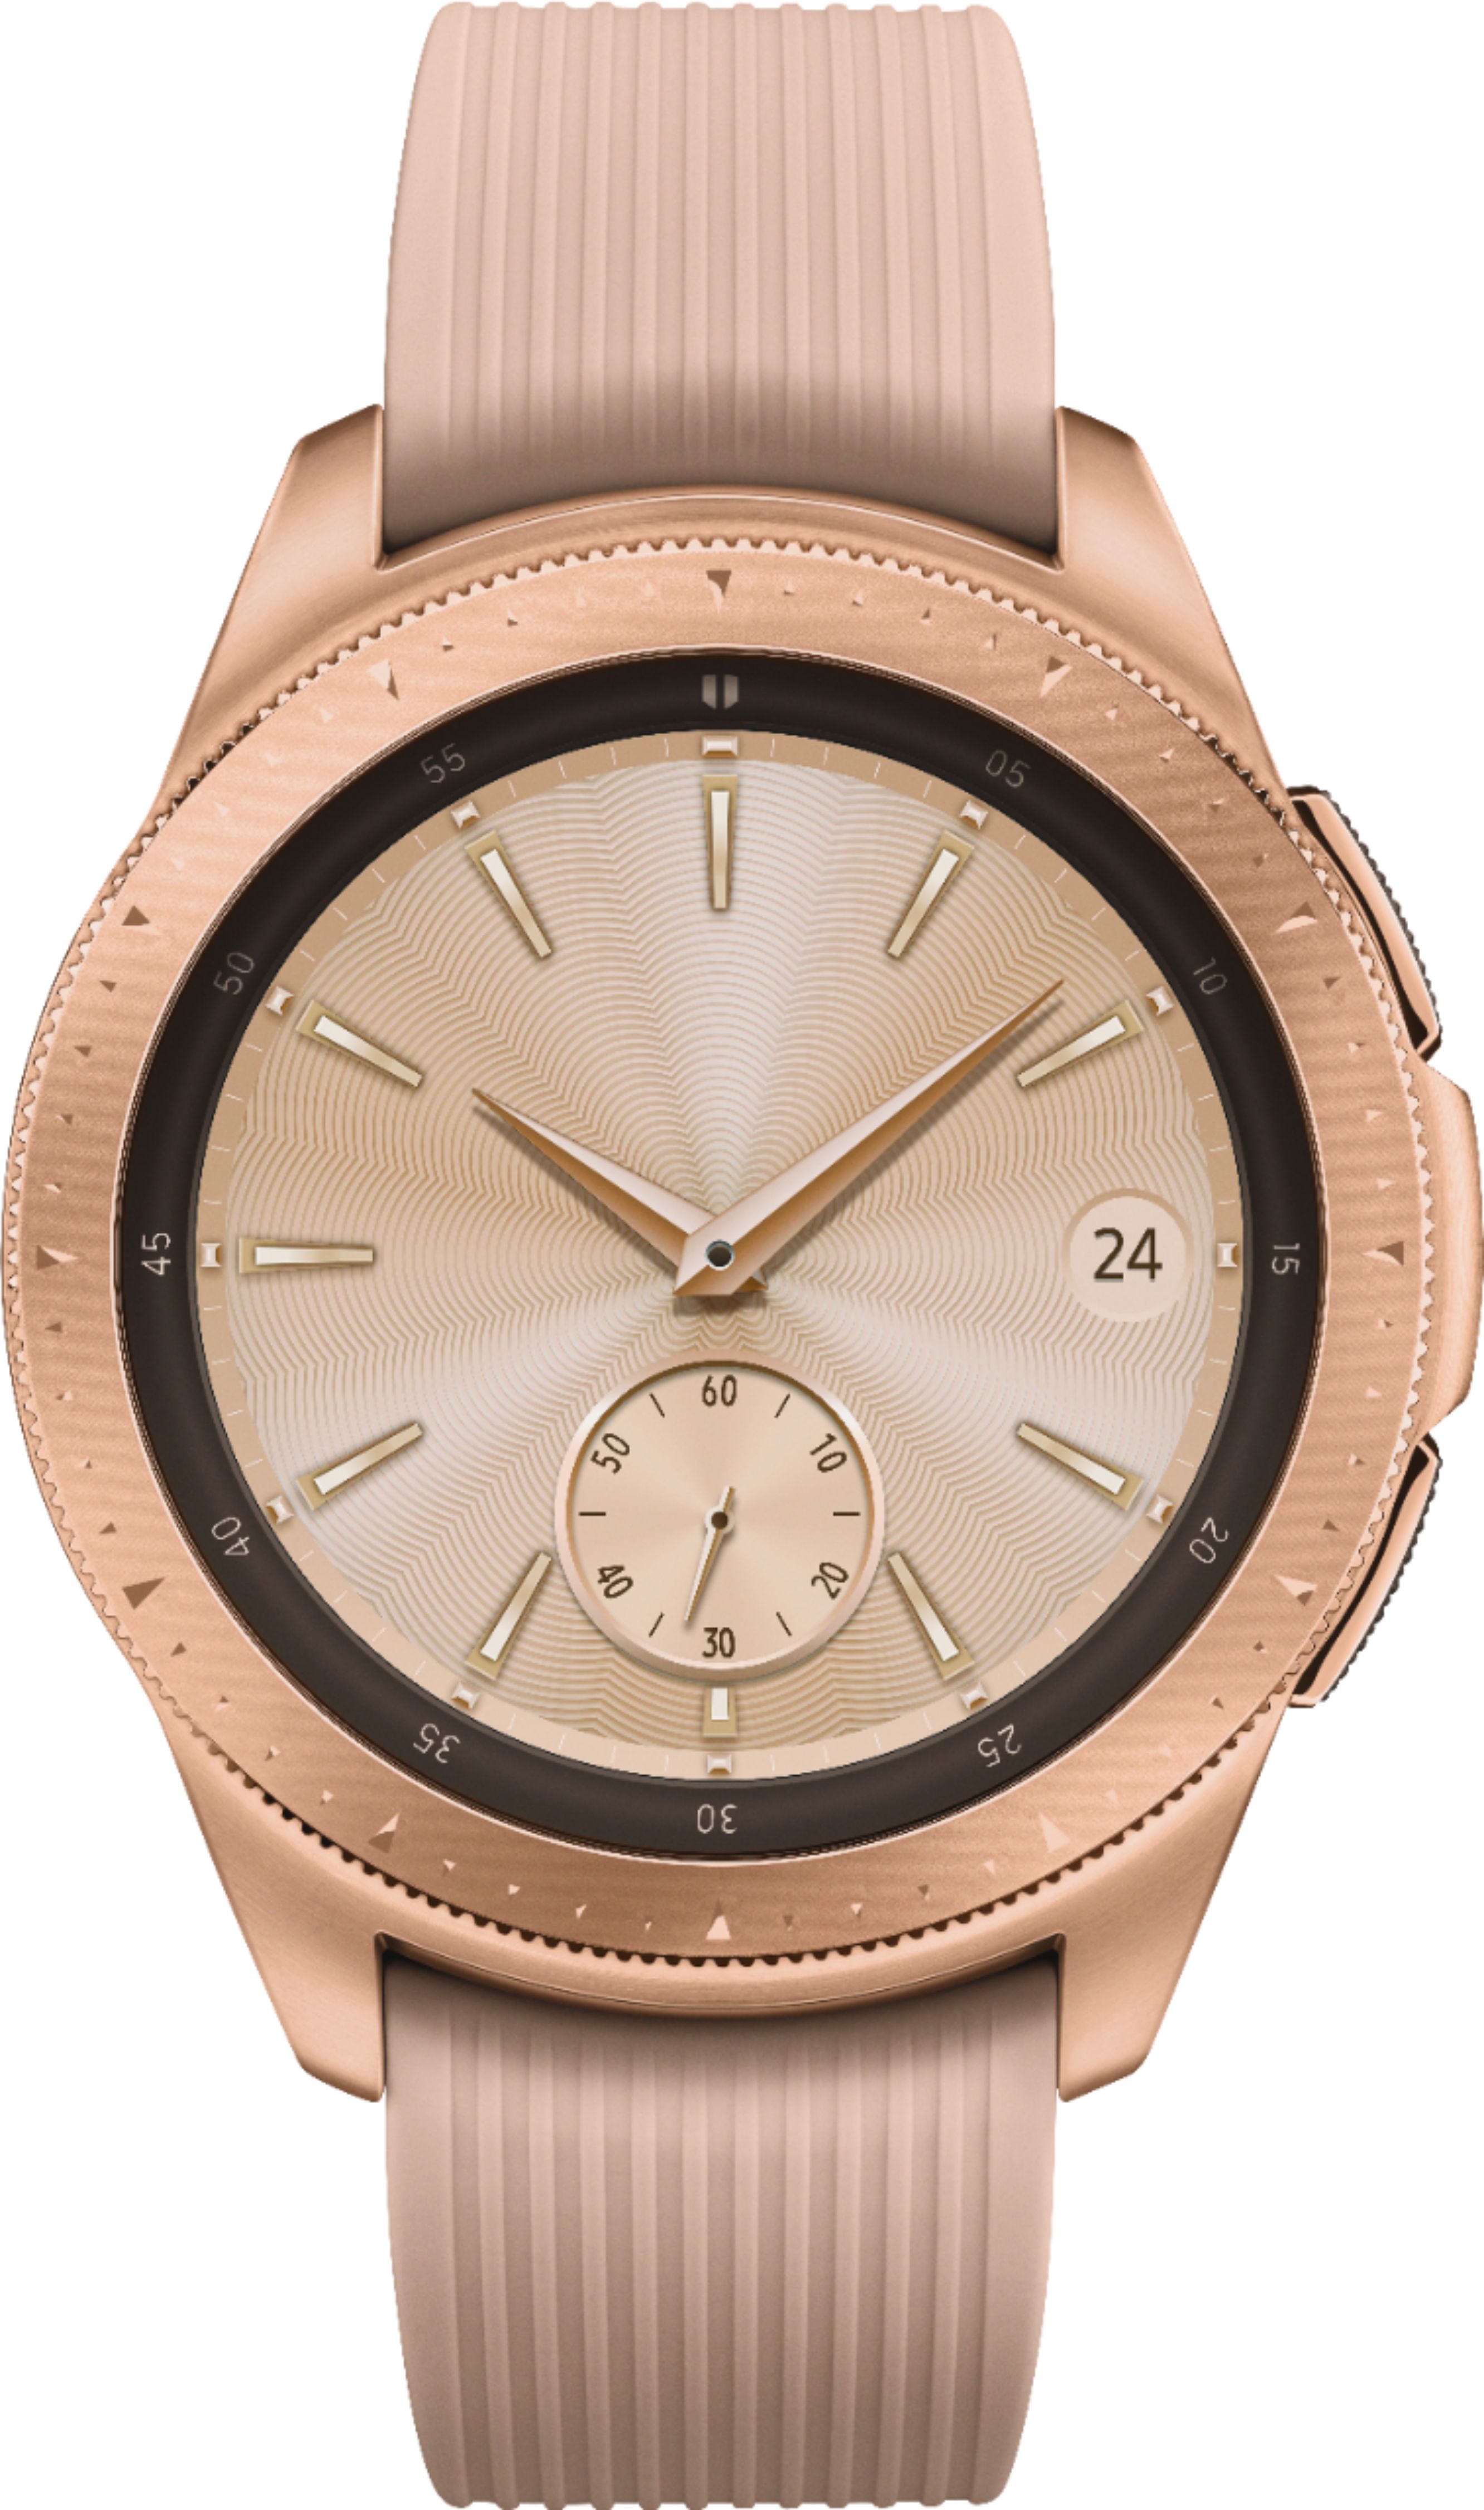 Samsung Galaxy Watch Smartwatch 42mm Stainless Steel LTE (unlocked) Rose Gold SMR815UZDAXAR